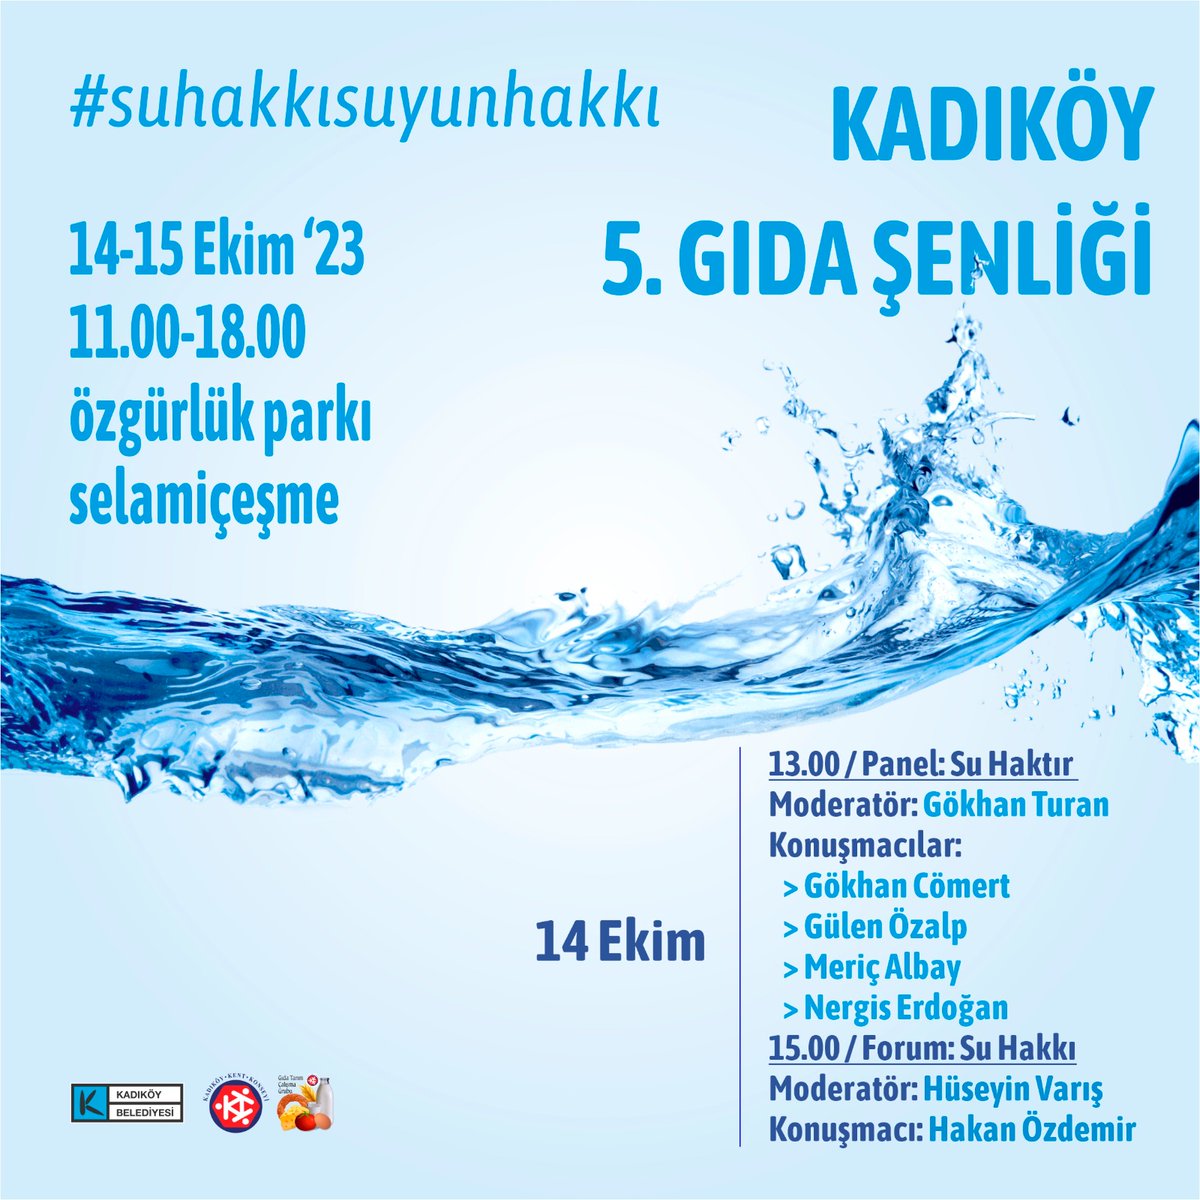 Kadıköy Belediyesi'nin ev sahipliğinde bu yıl 5.'si düzenlenecek olan Kadıköy Gıda Şenliği'nde 'Su Haktır' konulu panelde tüm yönleriyle su hakkını konuşacağız.

#SuHakkı #Kadıköy #KadıköyBelediyesi #KadıköyKentKonseyi